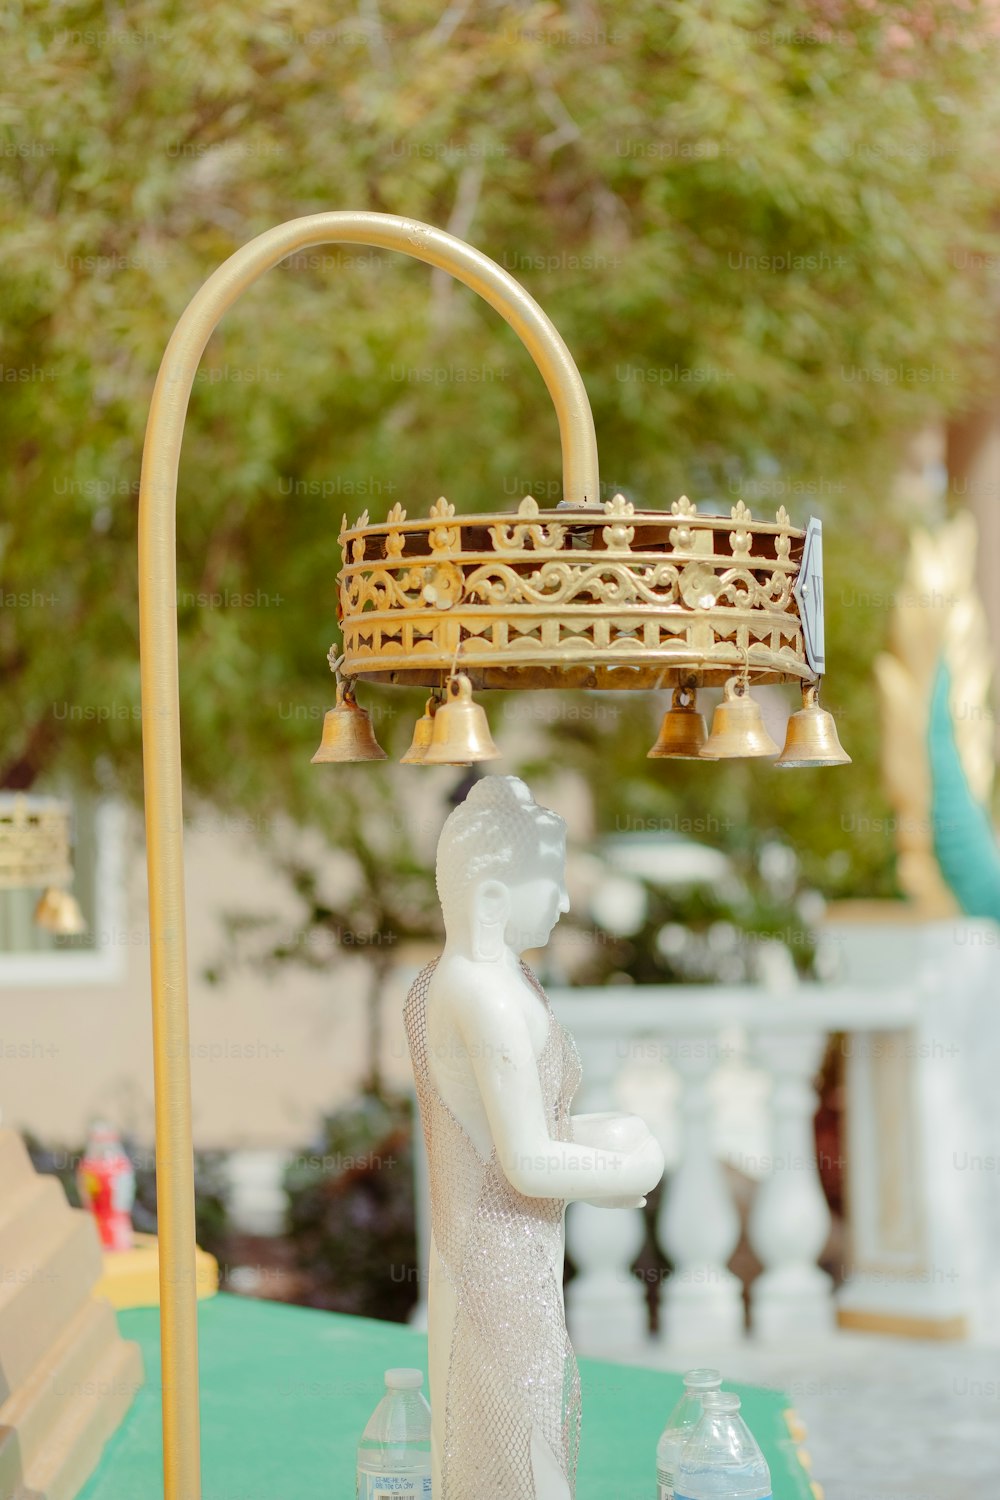 eine Statue einer Person mit einer Krone darauf